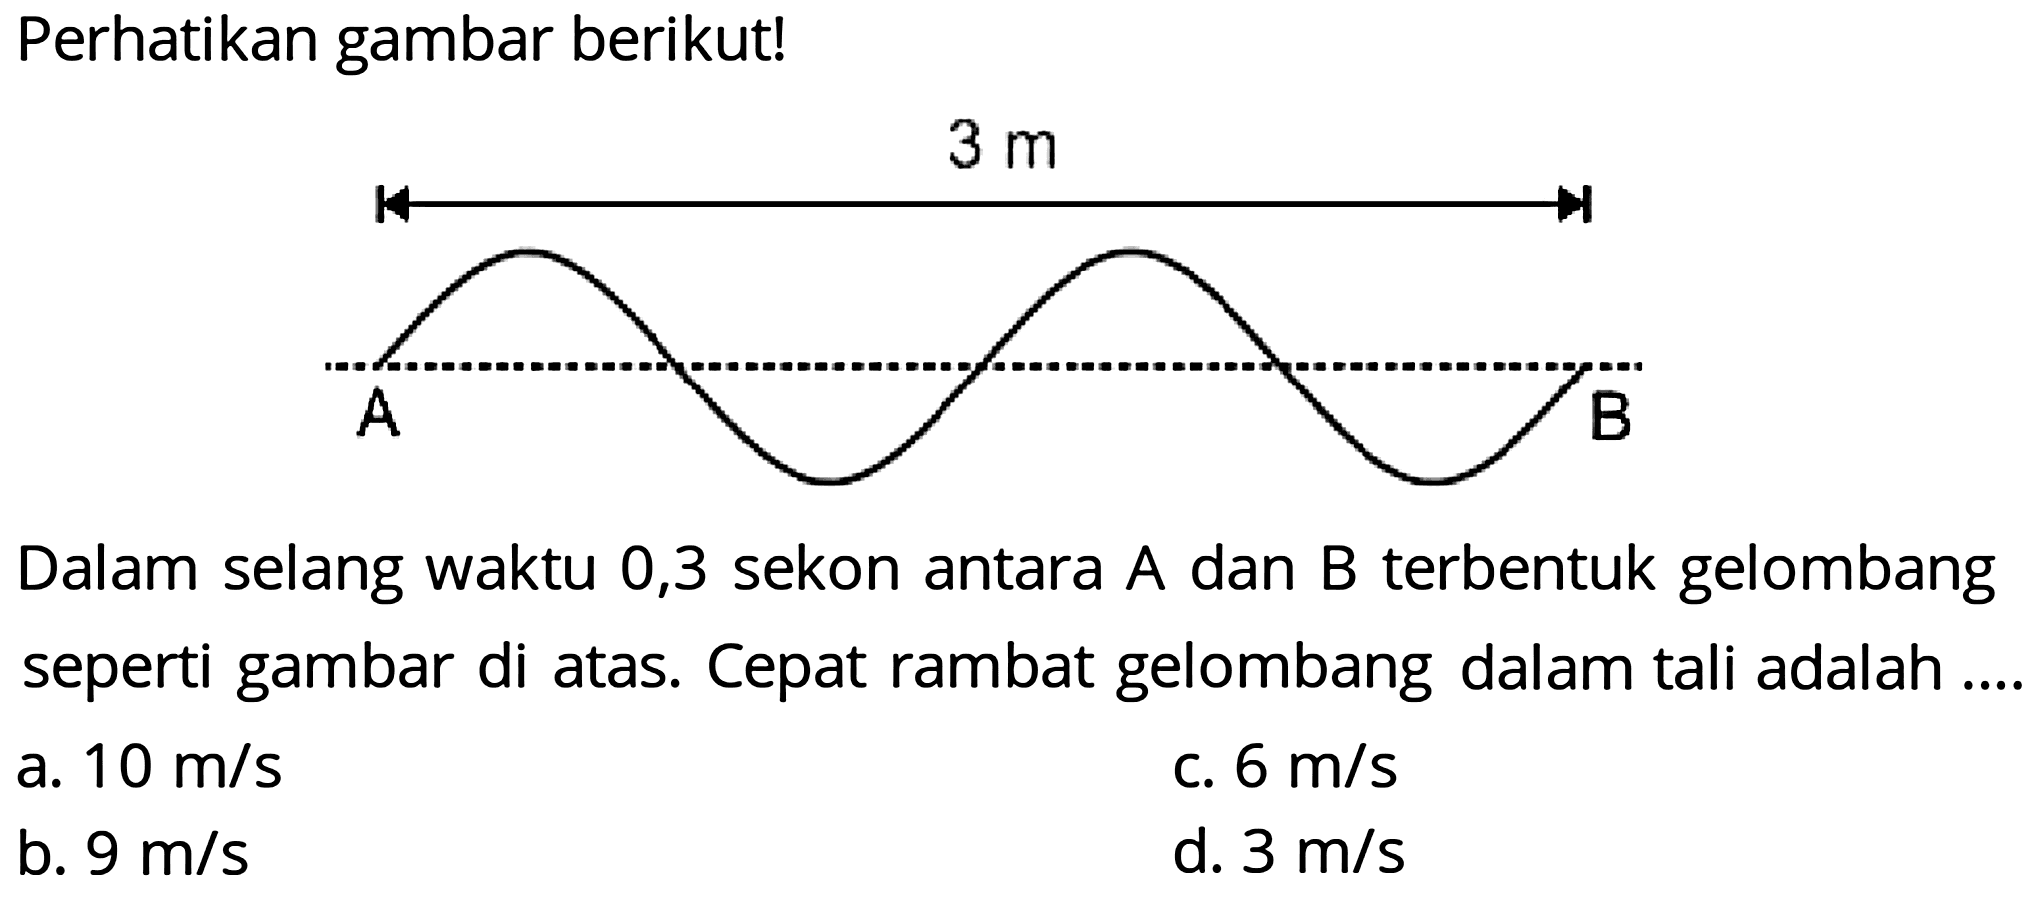 Perhatikan gambar berikut!
Dalam selang waktu 0,3 sekon antara A dan B terbentuk gelombang seperti gambar di atas. Cepat rambat gelombang dalam tali adalah ....
a.  10 m / s 
c.  6 m / s 
b.  9 m / s 
d.  3 m / s 